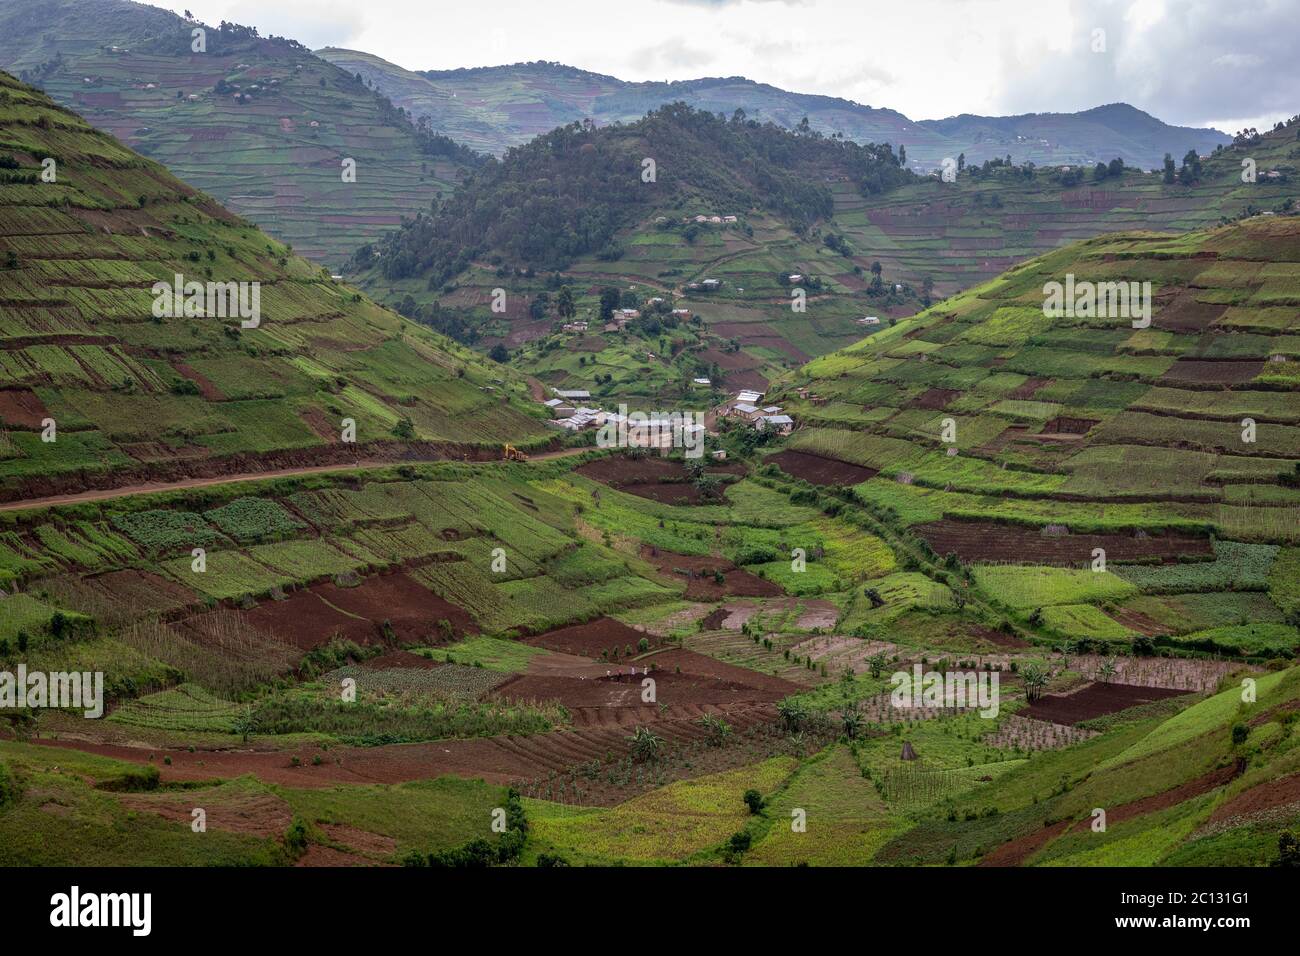 Verdi colline e terrazzamenti coltivano colture su pendii nel distretto di Kisoro, Uganda, Africa orientale Foto Stock